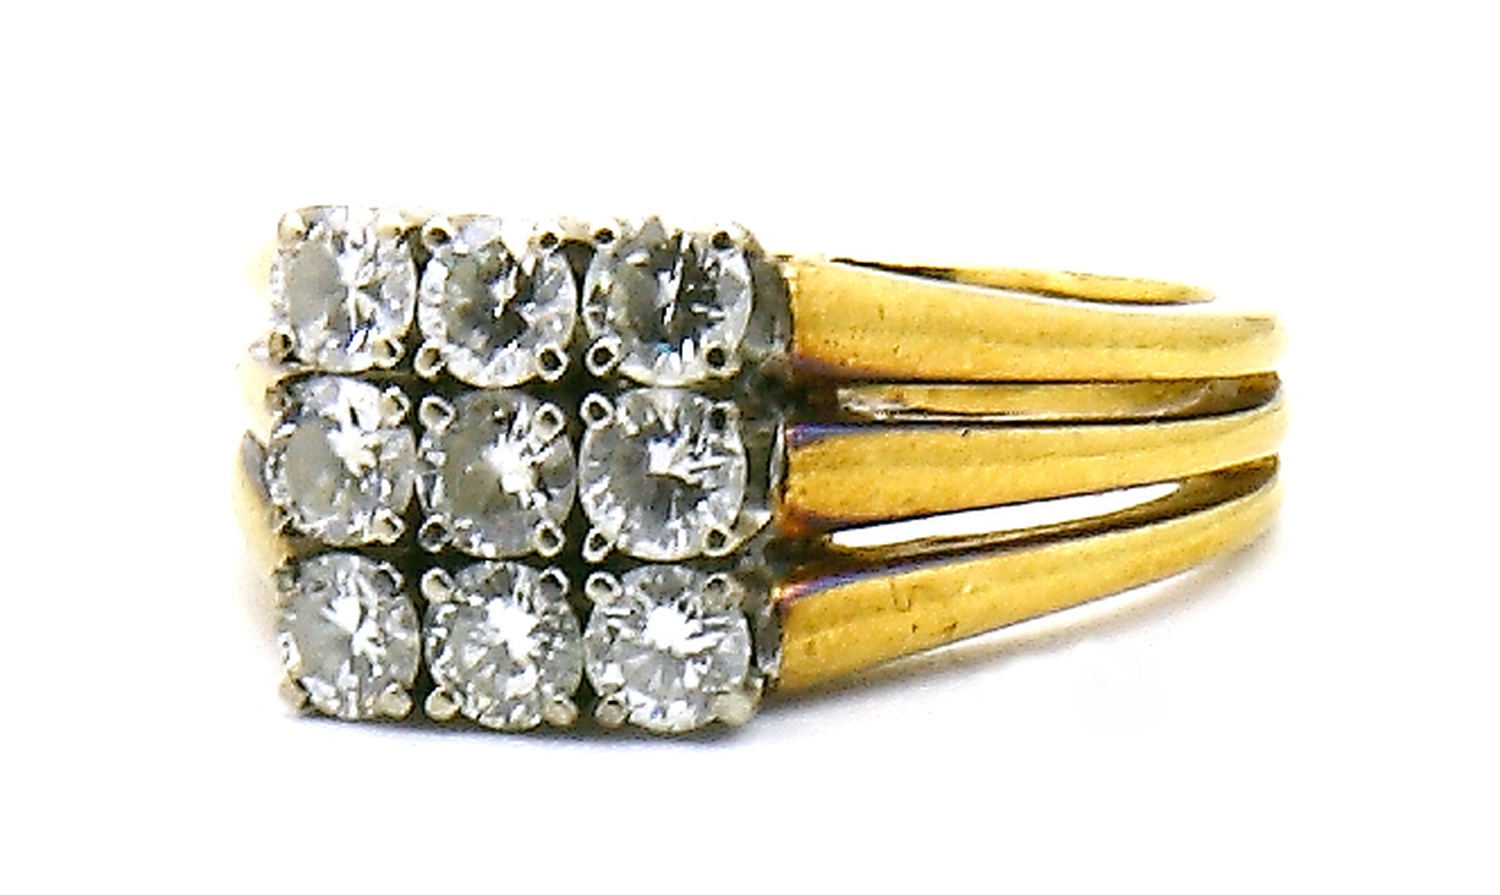 Auktionshaus Quentin Berlin  Schmuck Ring  750er GG. mit neun Diamanten im Brillantschliff  zus. 0 98 ct.